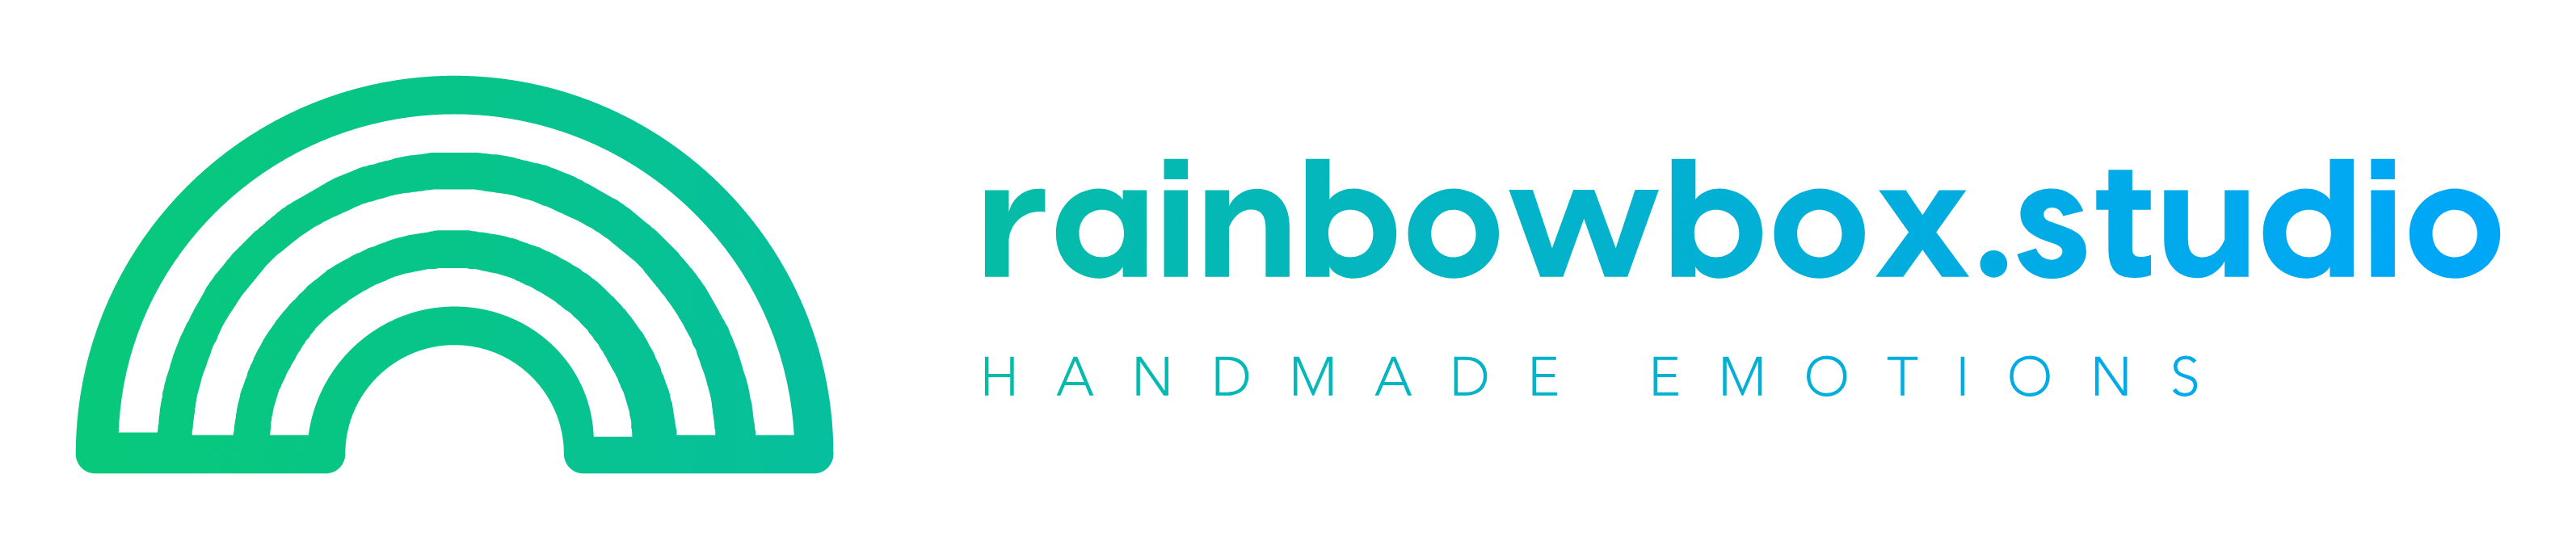 Rainbow Box Studio